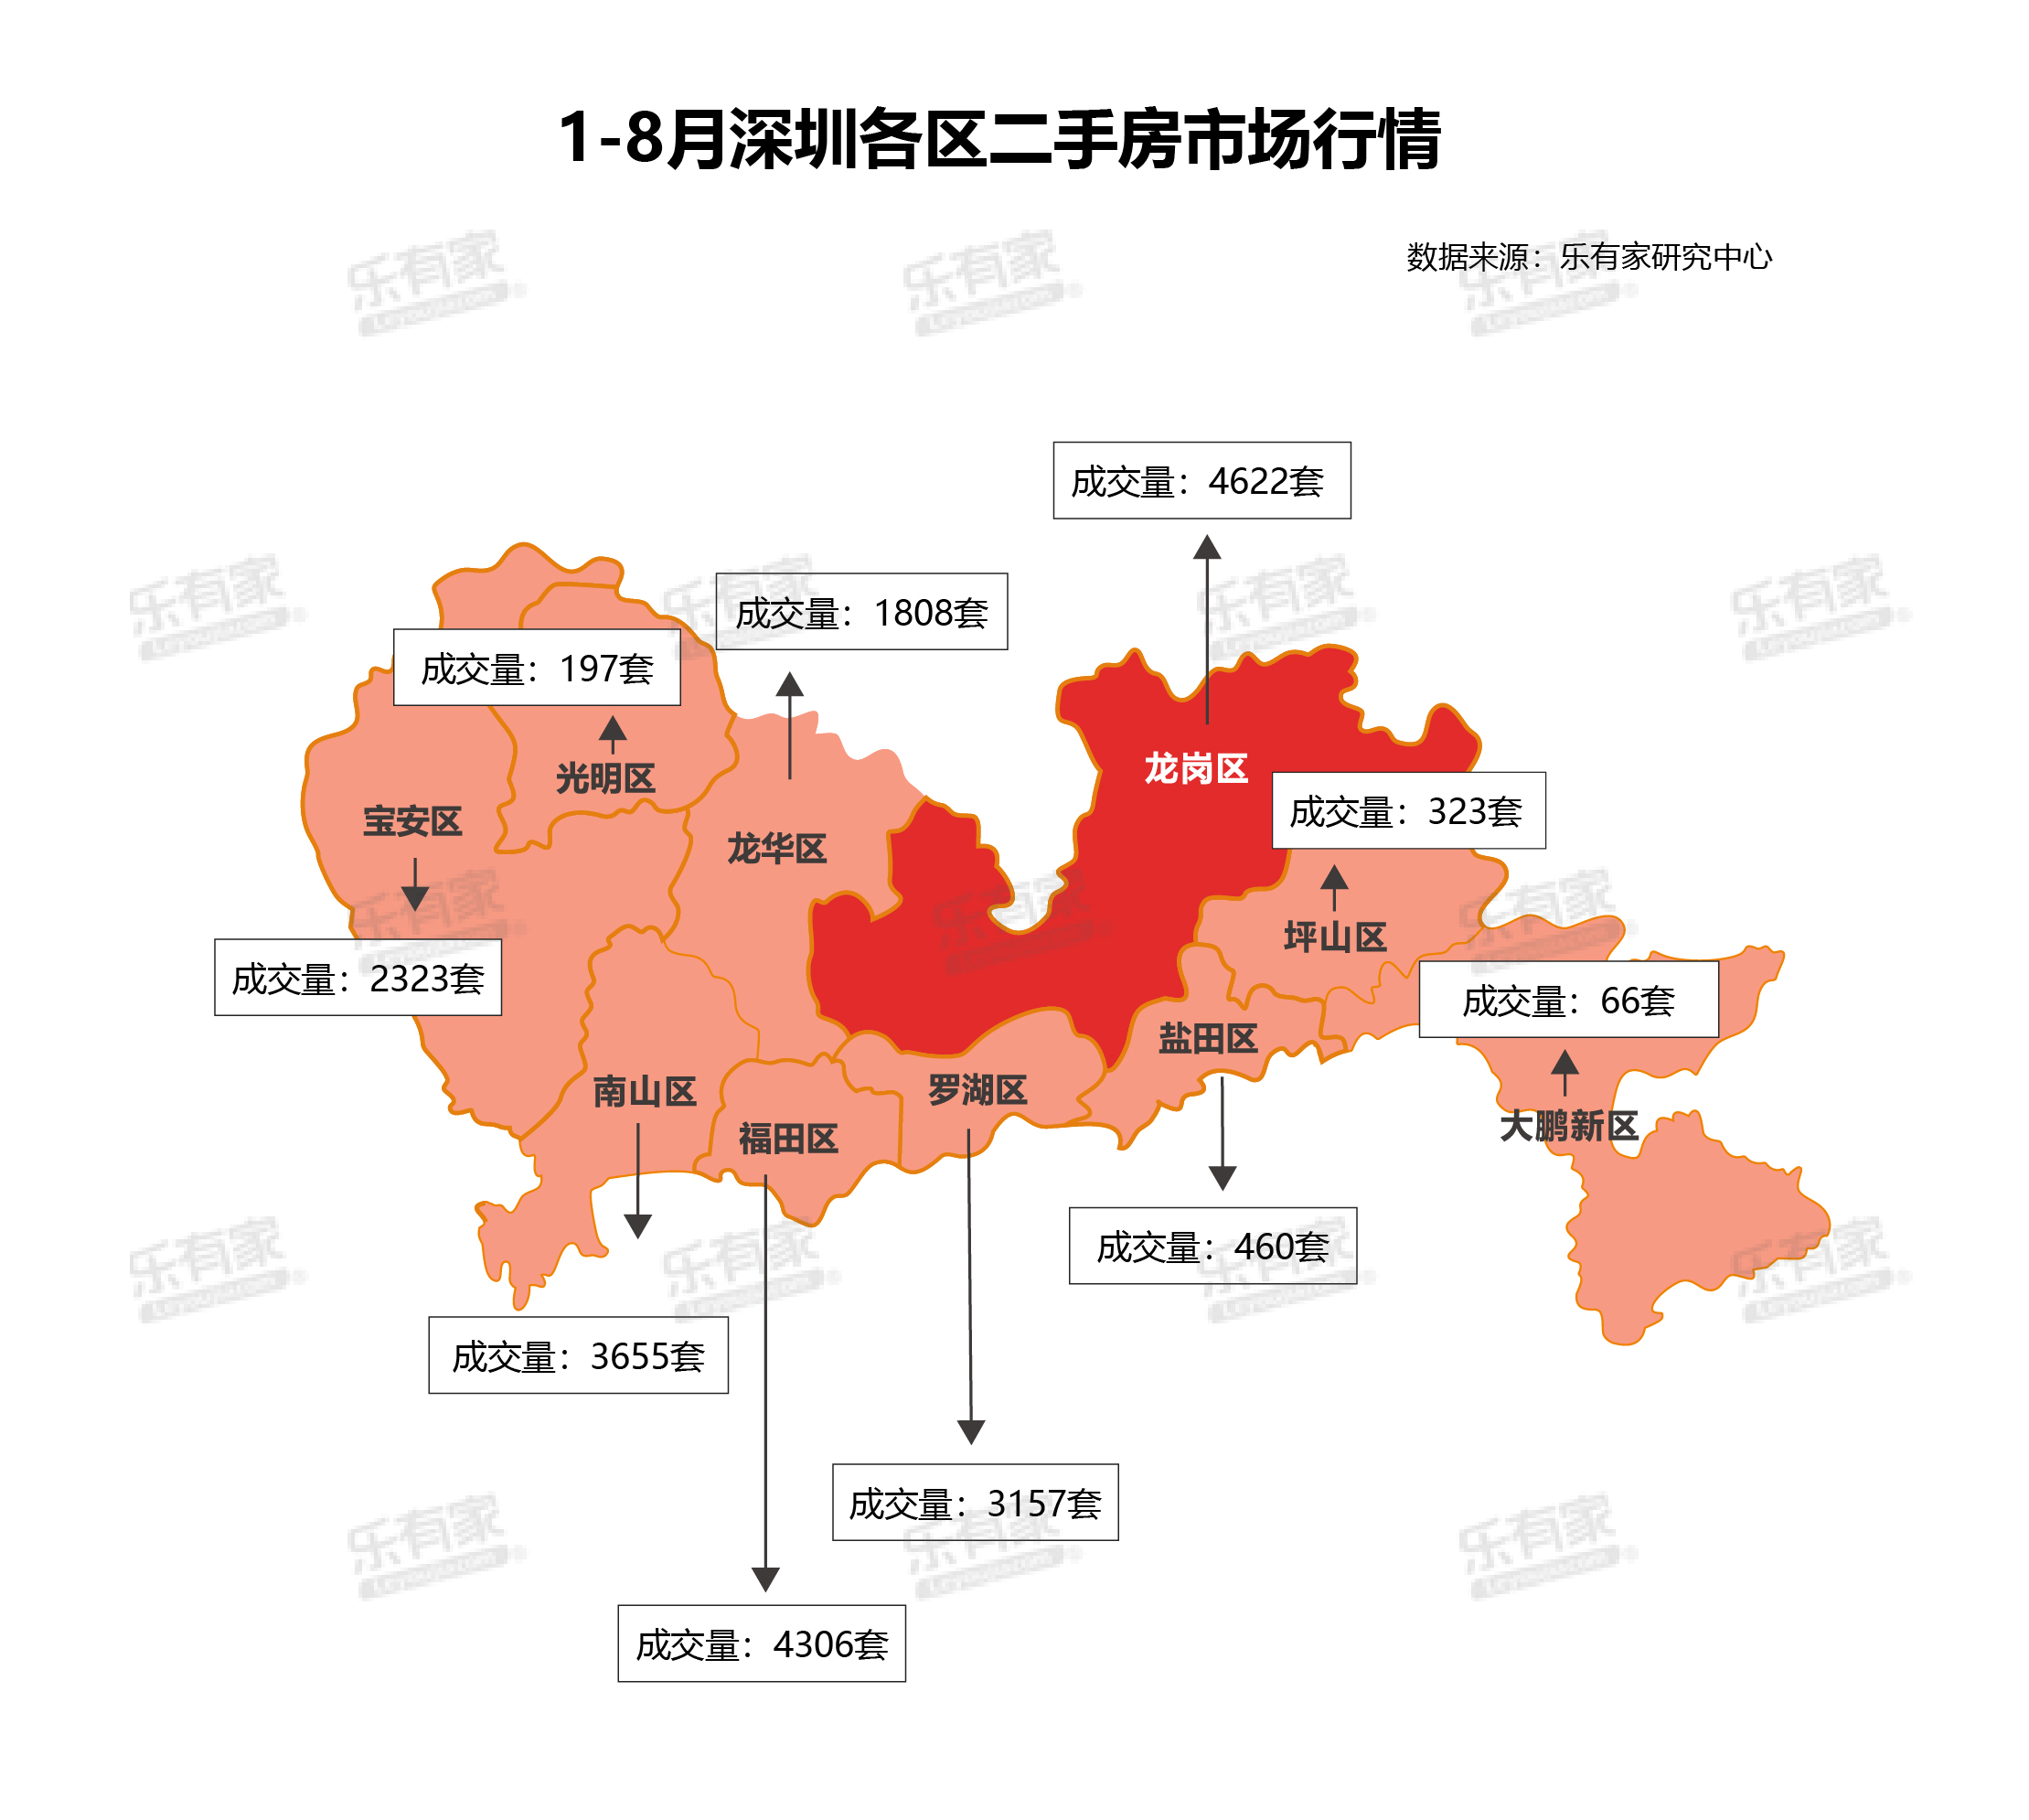 3y体育深圳片区房价图更新低价区间大幅度增加(图3)